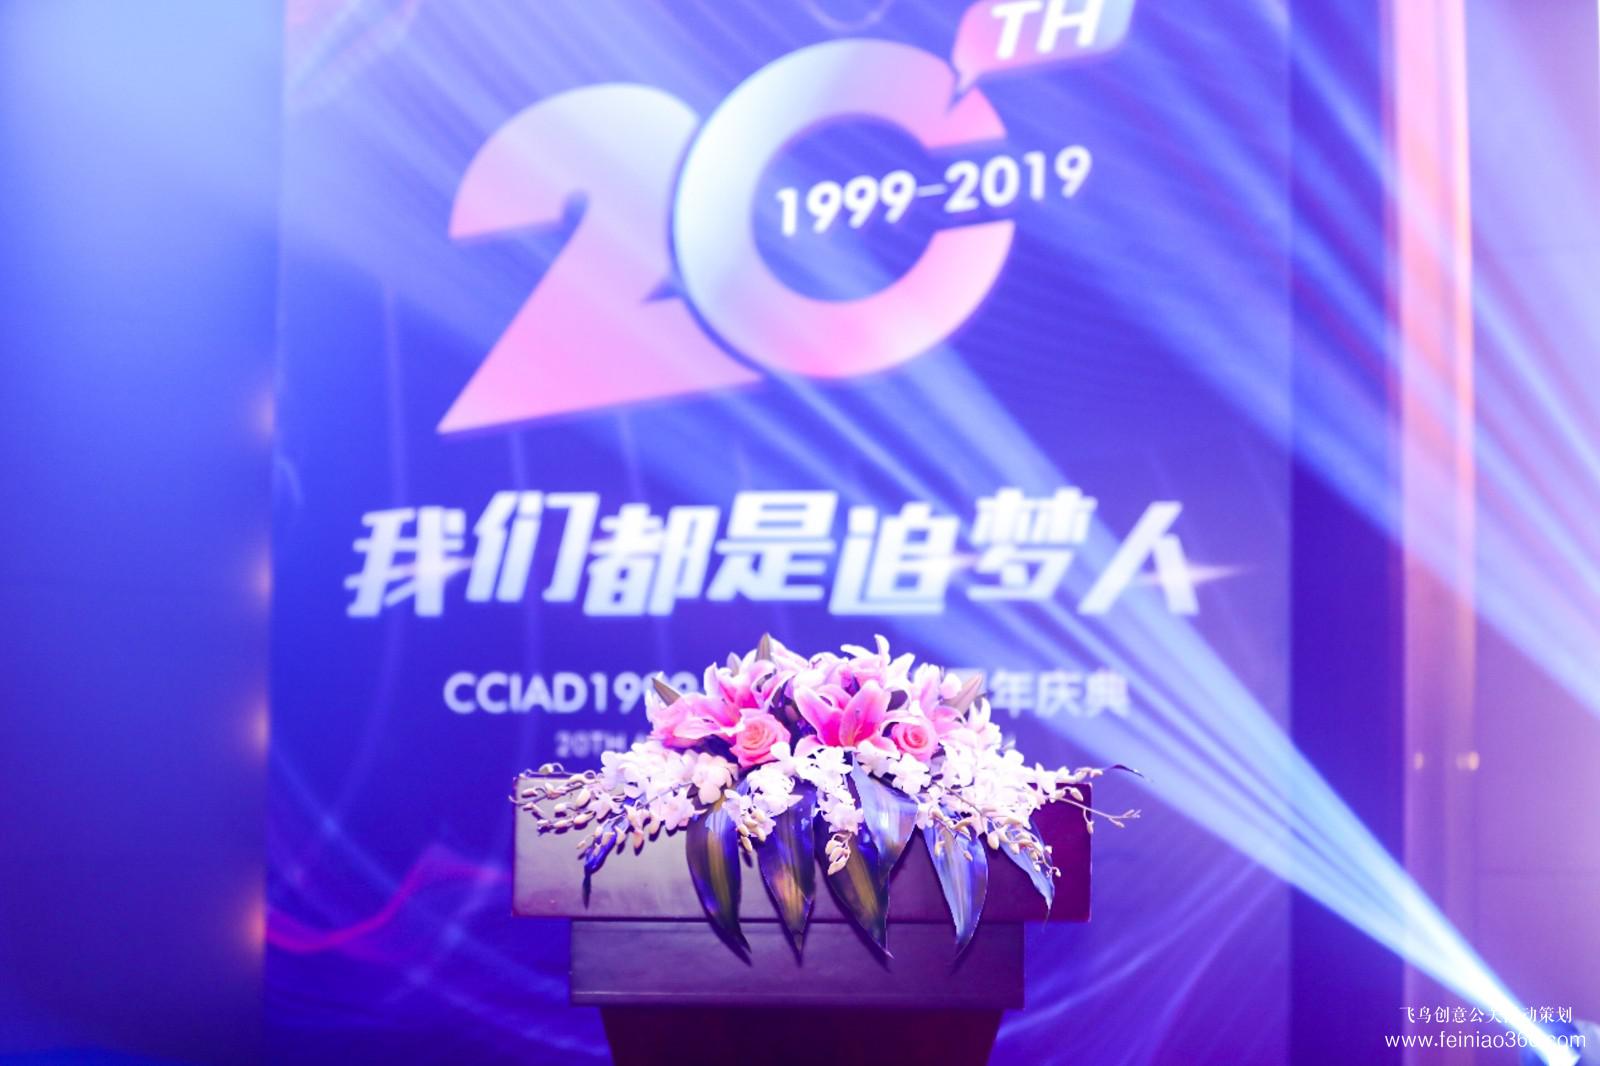 CCIAD1999-2019二十周年庆典